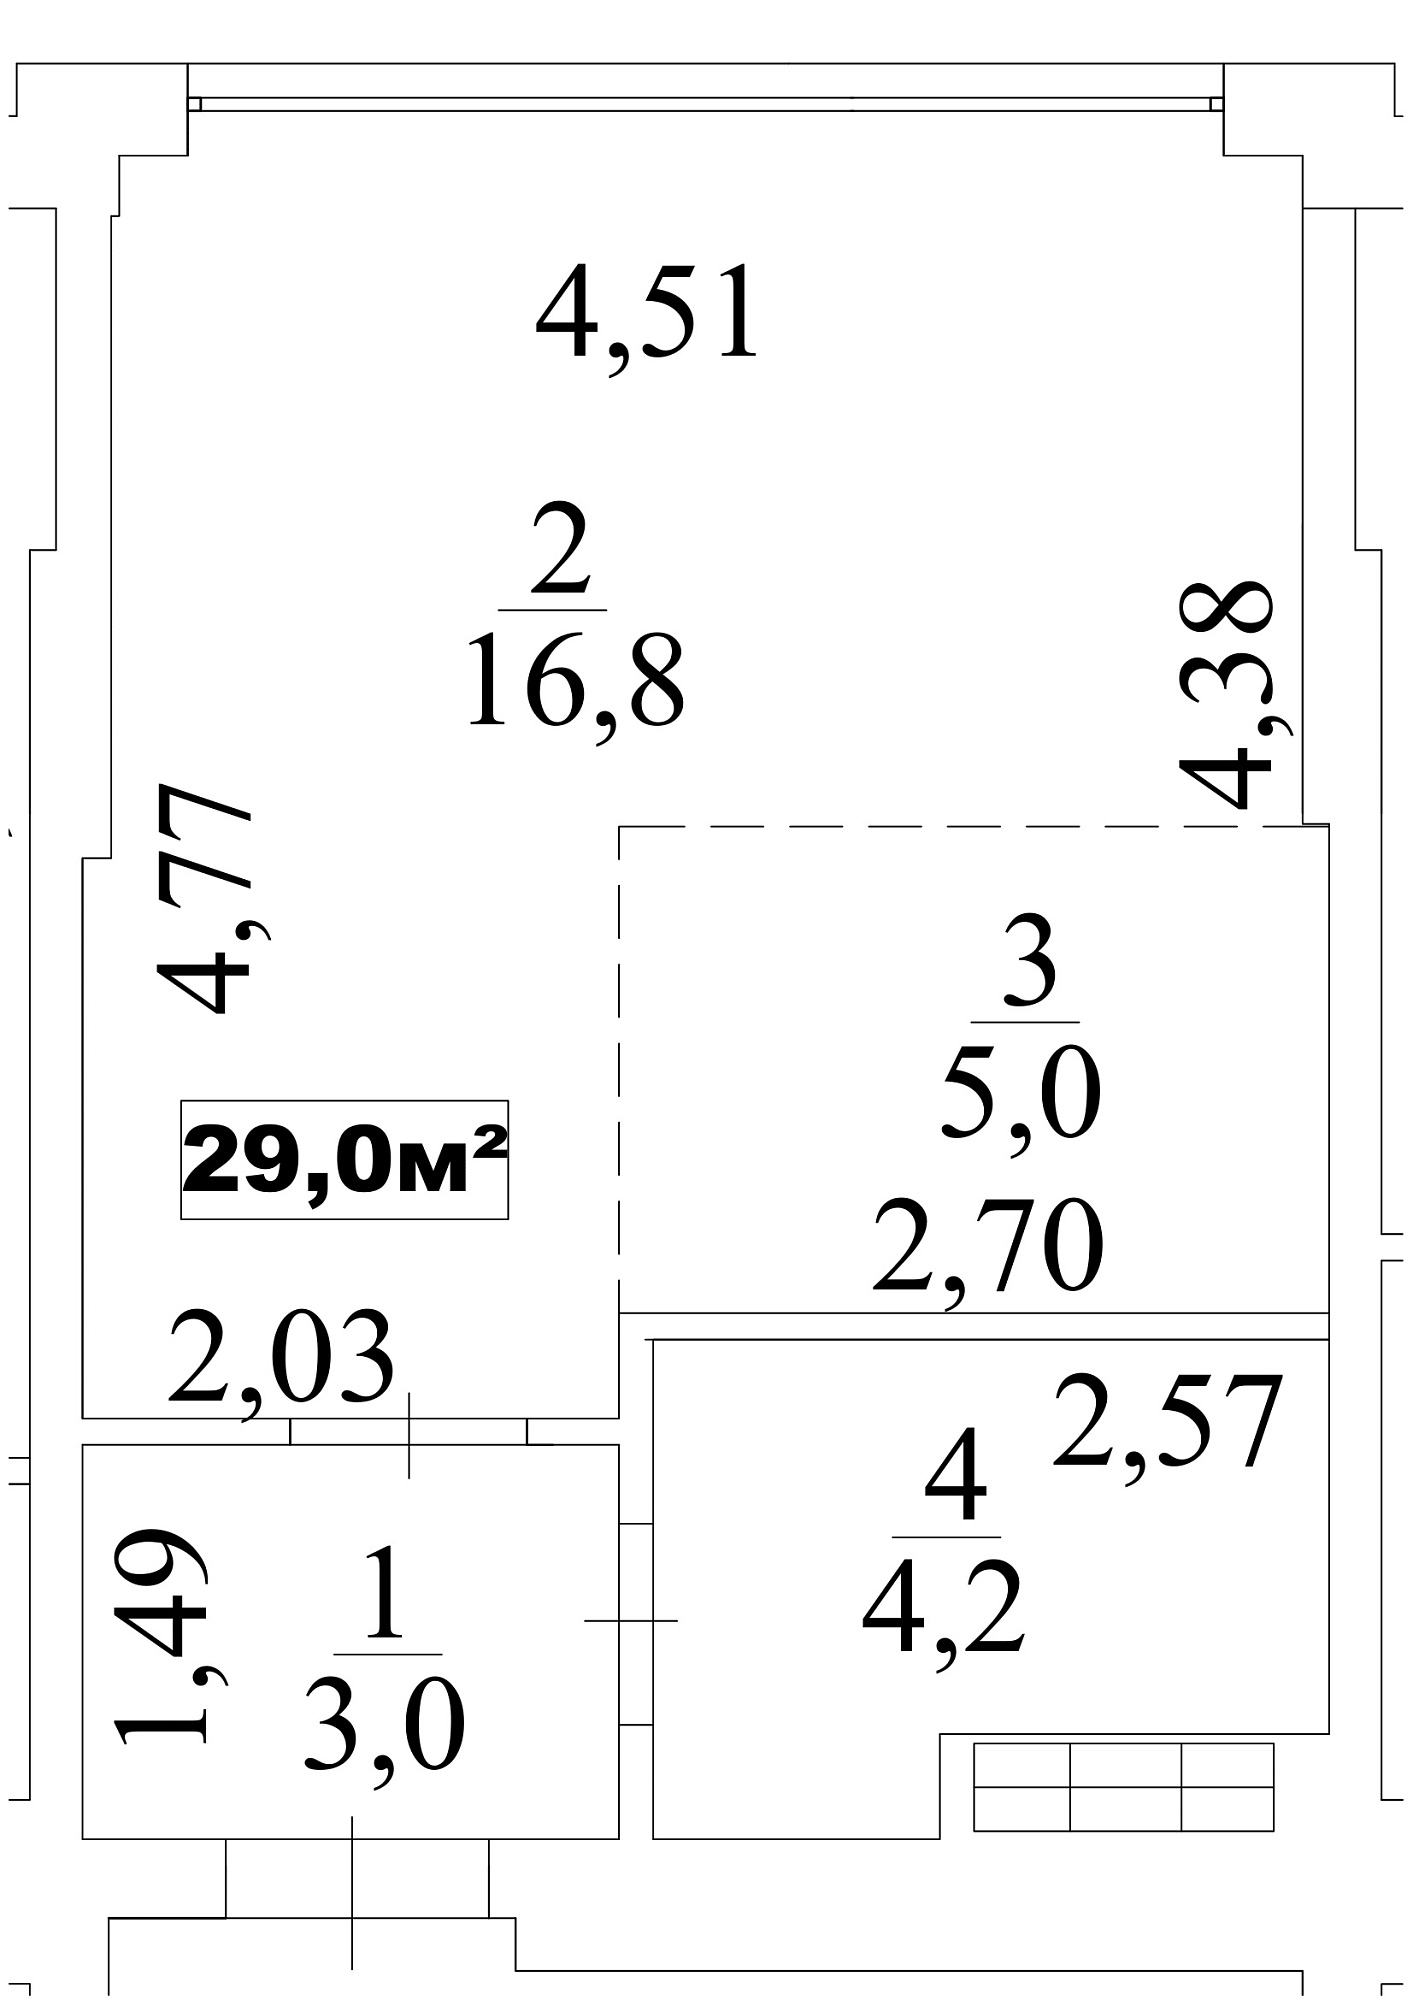 Планування Smart-квартира площею 29м2, AB-10-02/00014.